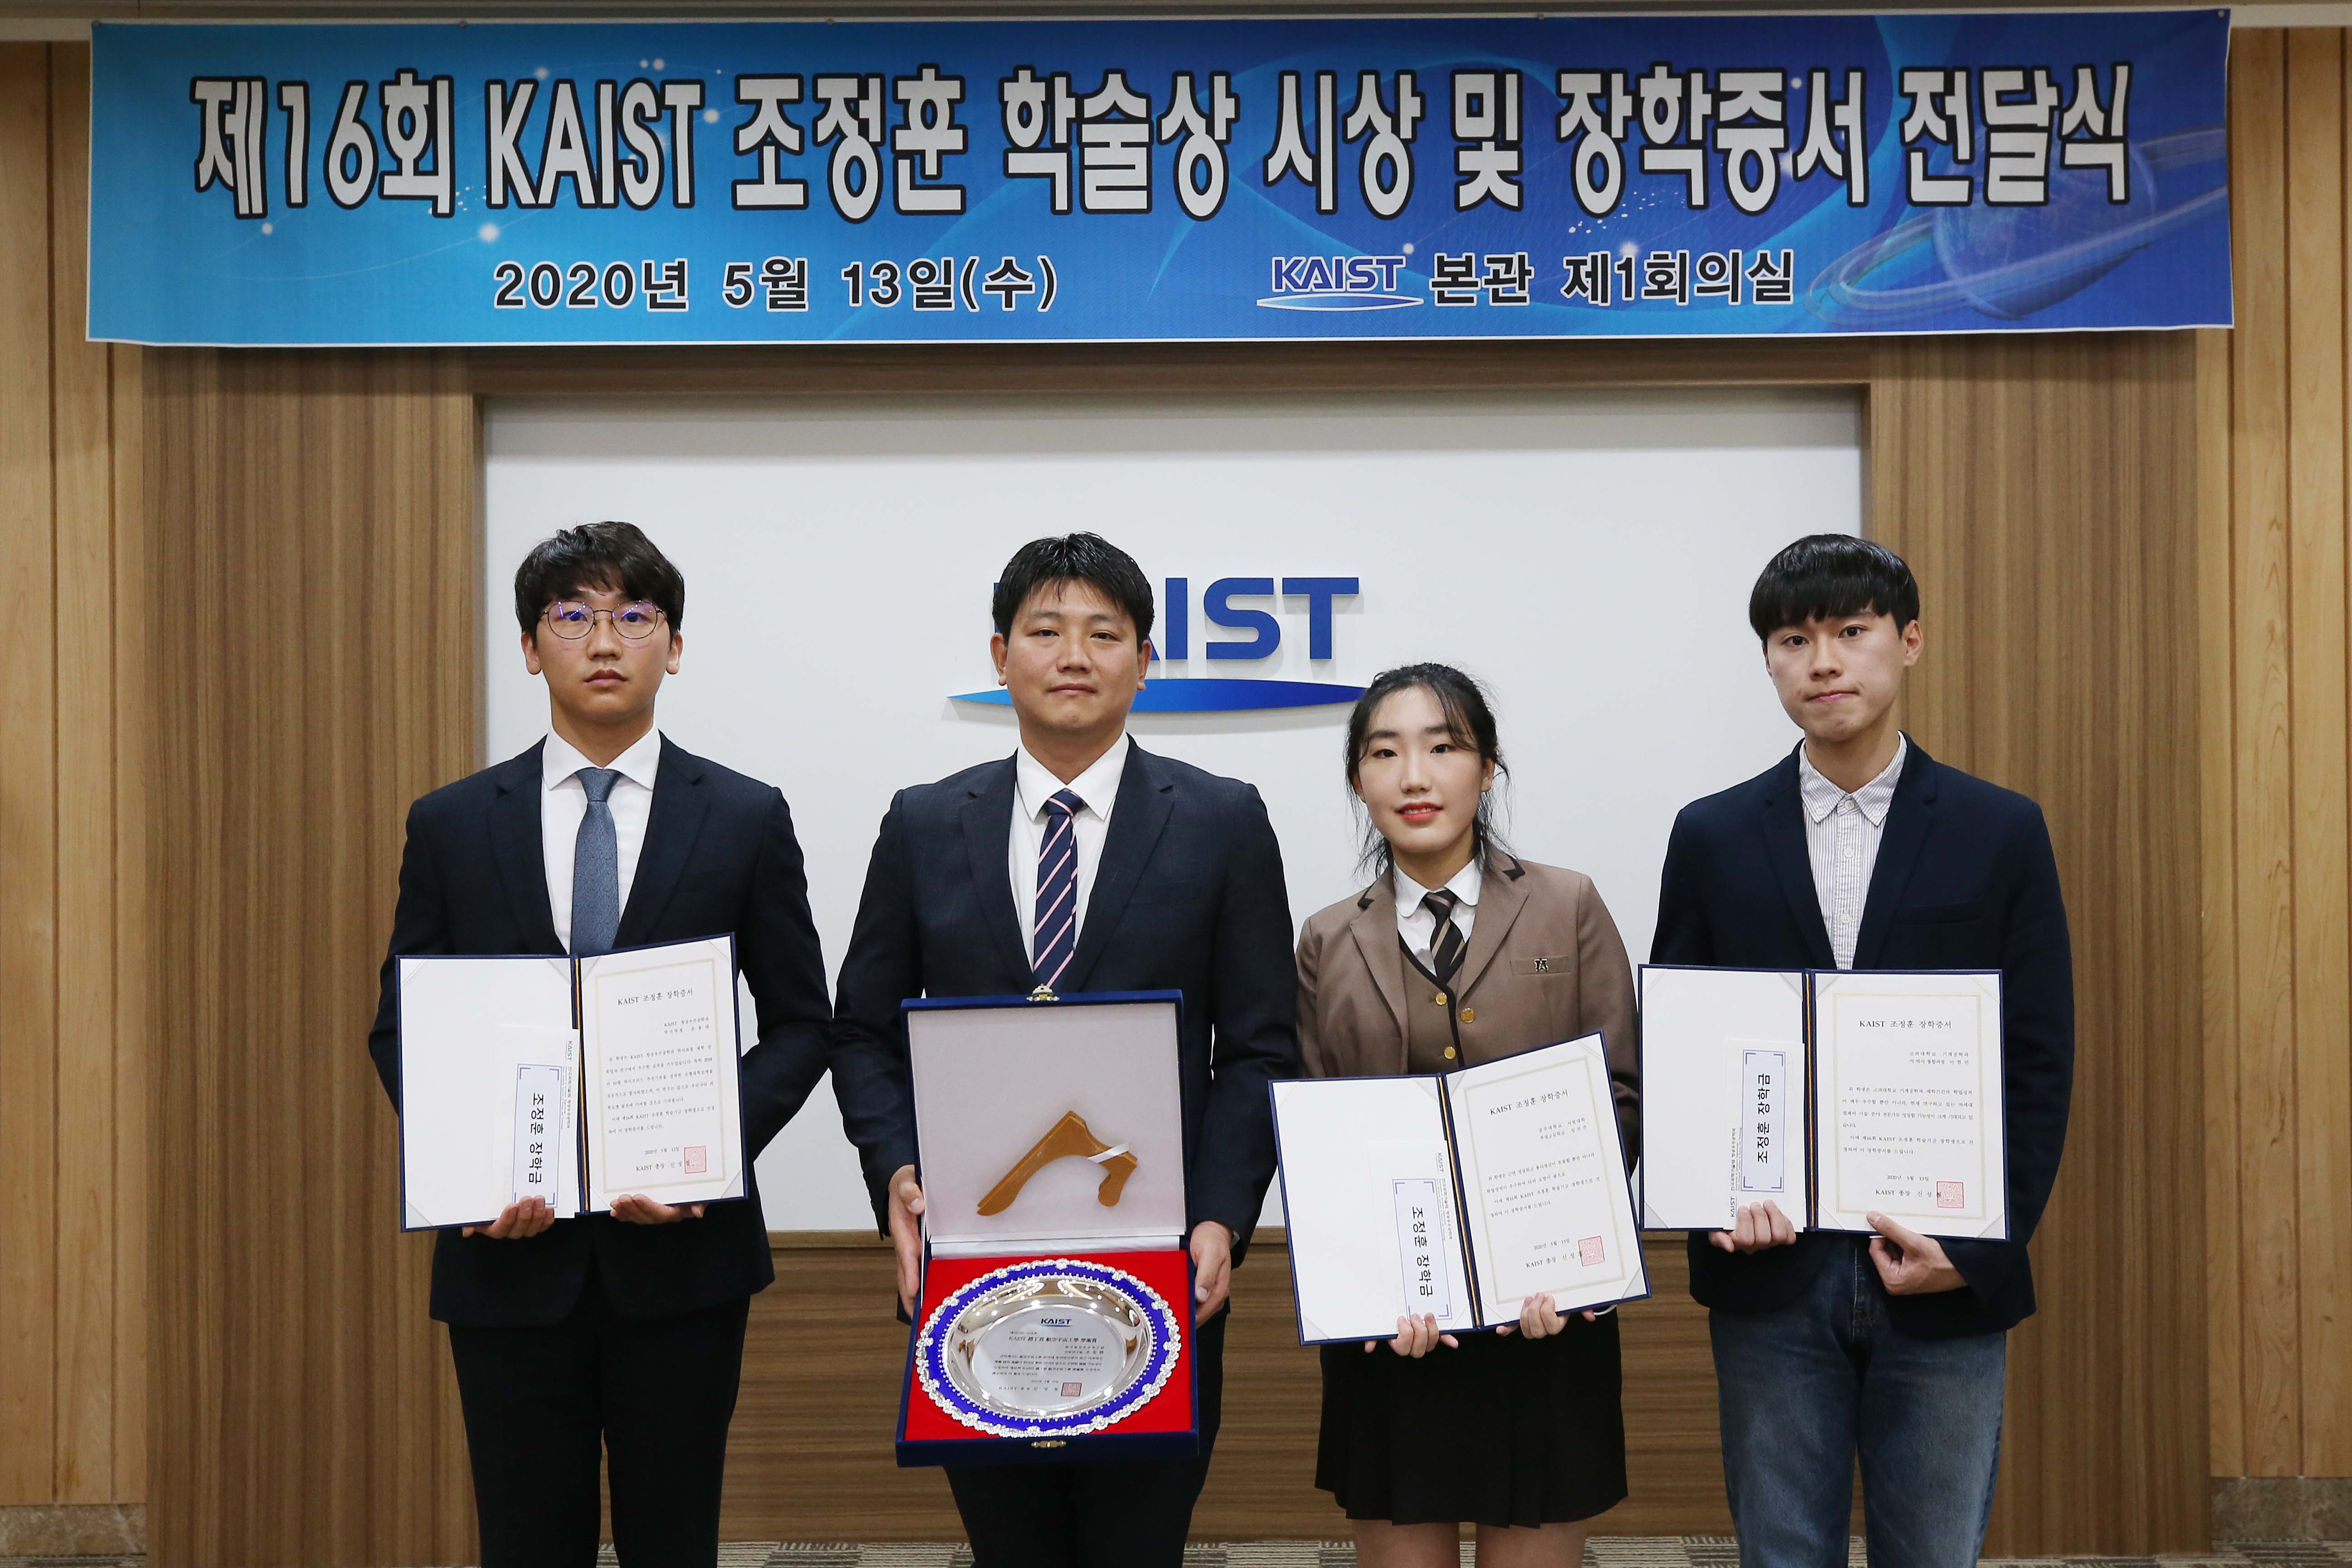 From left: PhD candidate Yongtae Yun at KAIST, Dr. Dong-Hyun Cho at KARI, Seonju Yim at Kongju National University High School, and MS-PhD candidate Haun-Min Lee at Korea University